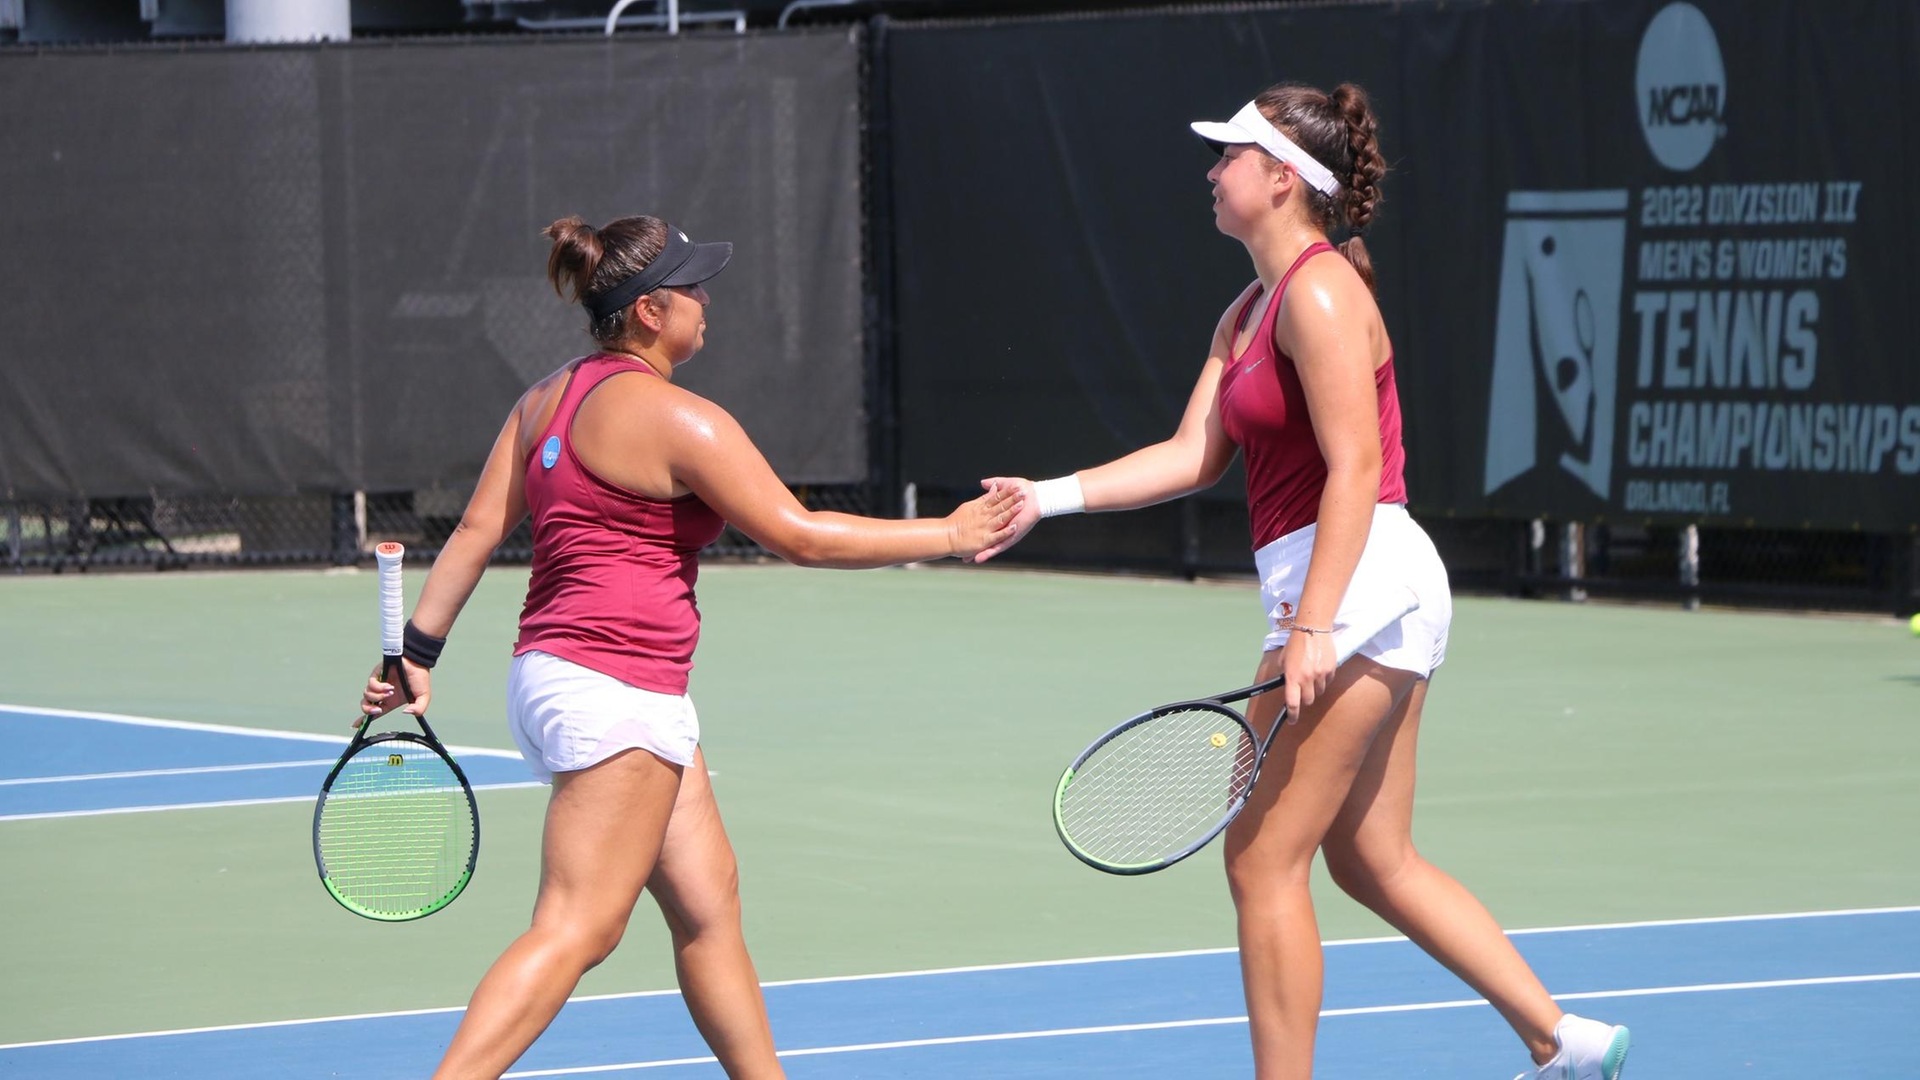 Alisha Chulani and Nikolina Batoshvili moved on to Saturday's quarterfinals